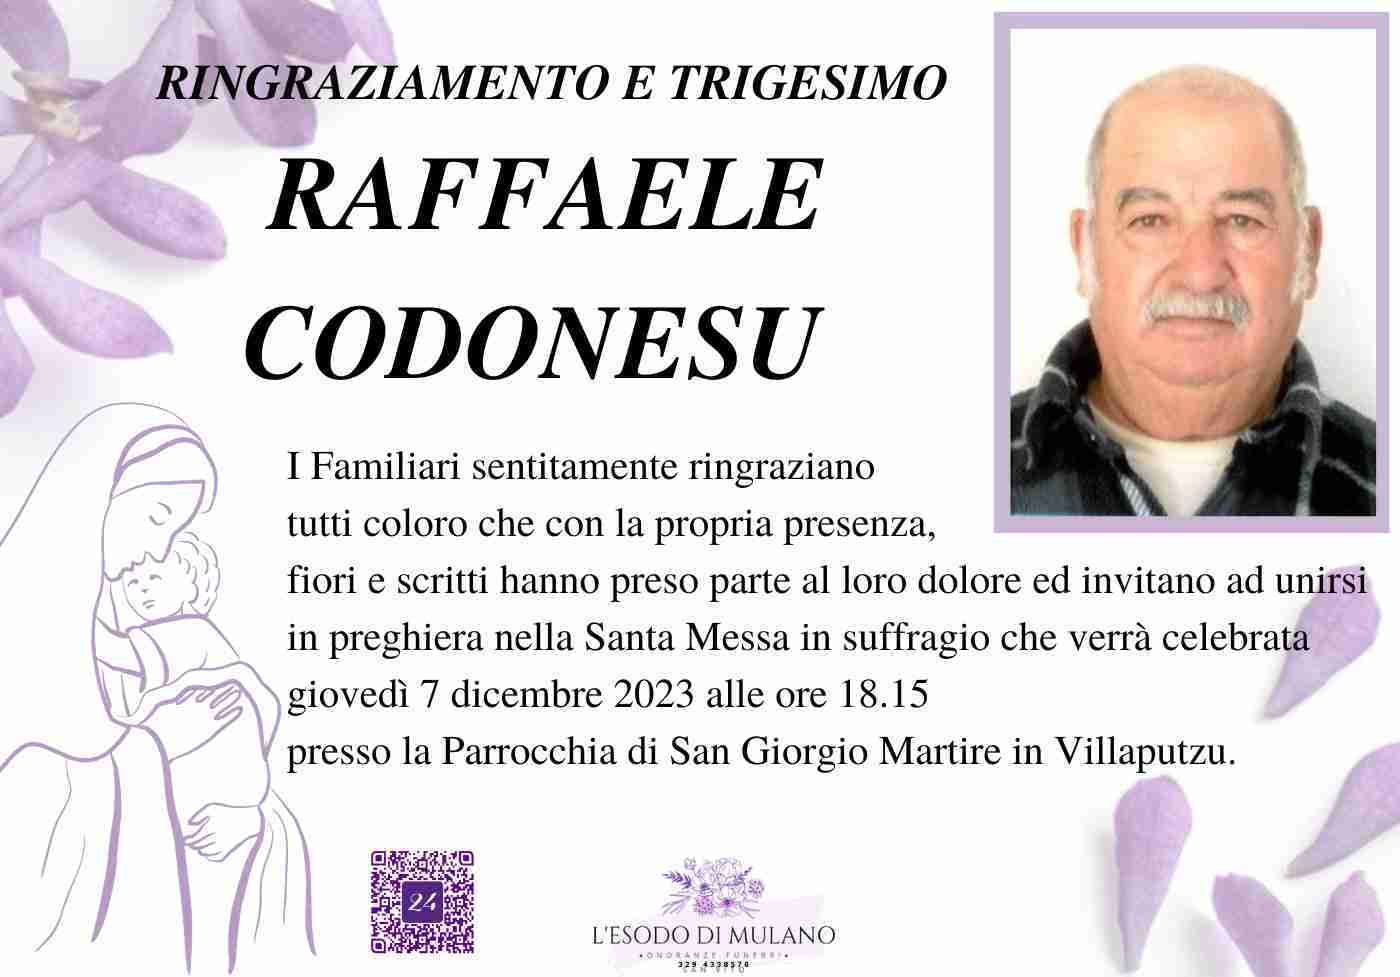 Raffaele Codonesu